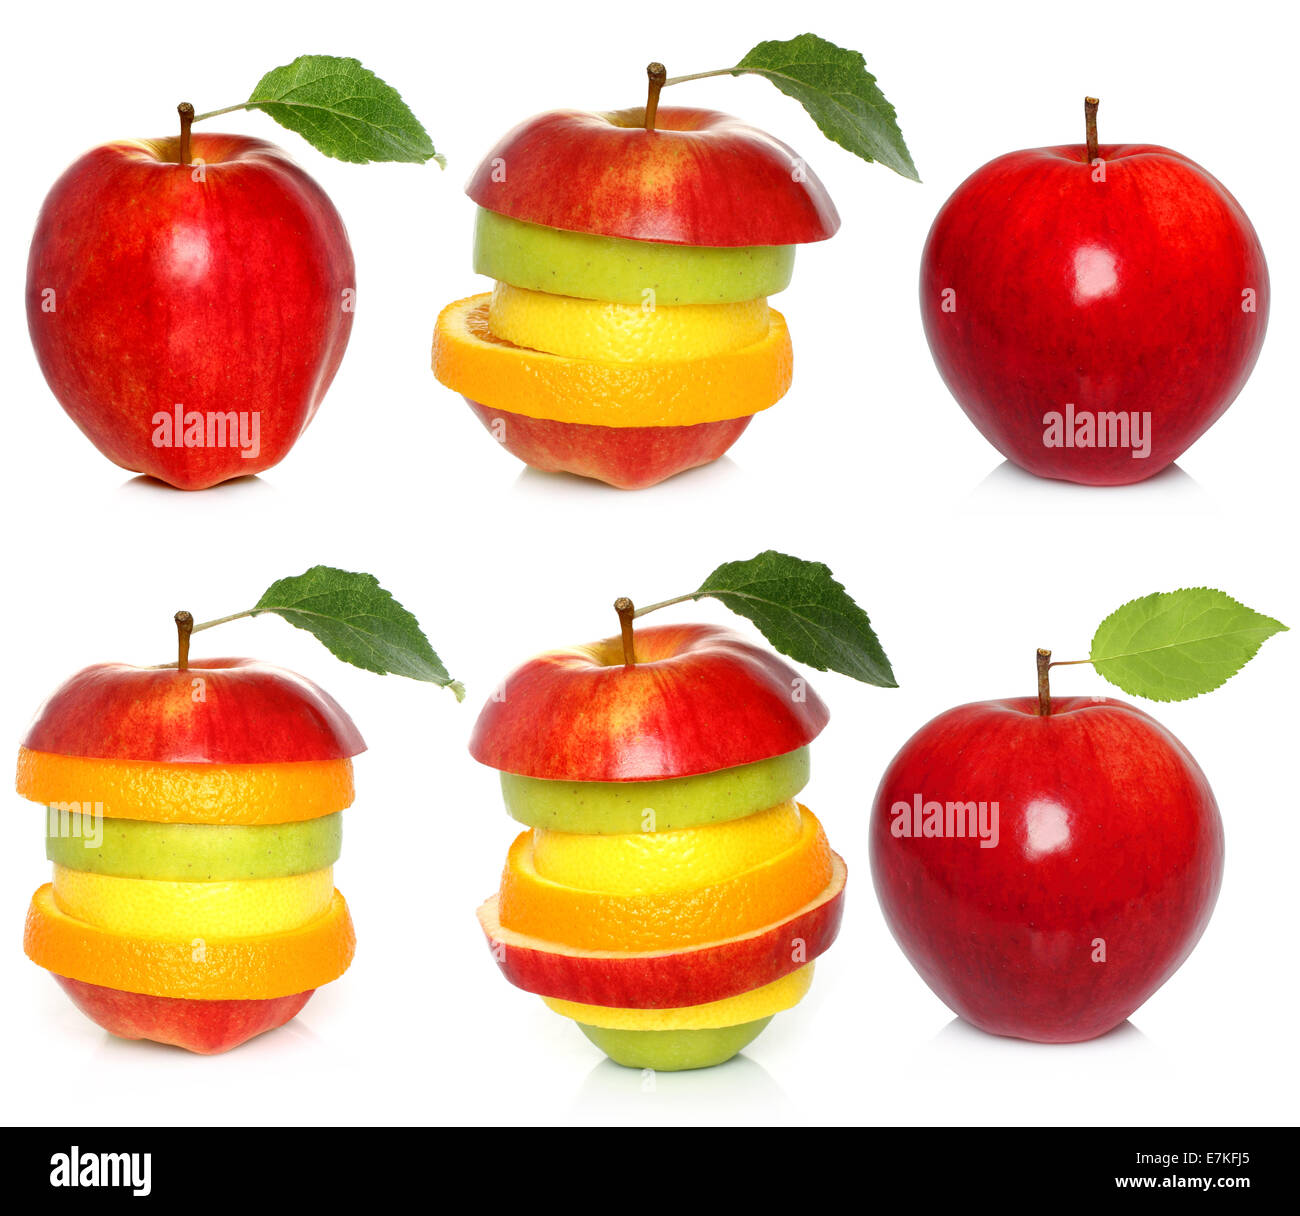 Apple and mixed fruit set on white background Stock Photo